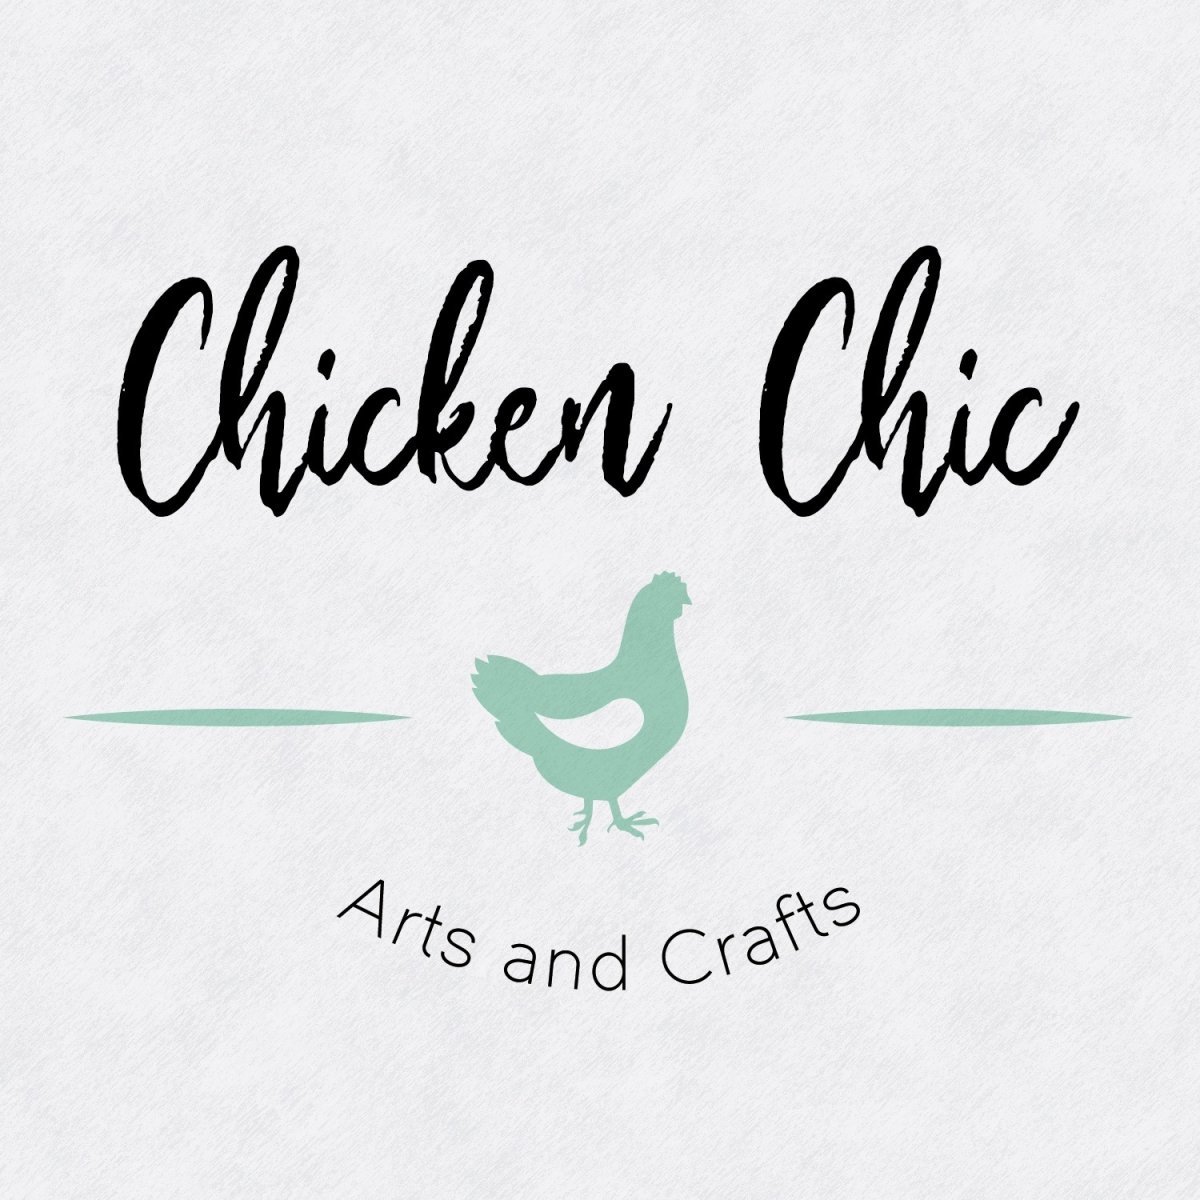 Chicken Chic Arts & Crafts